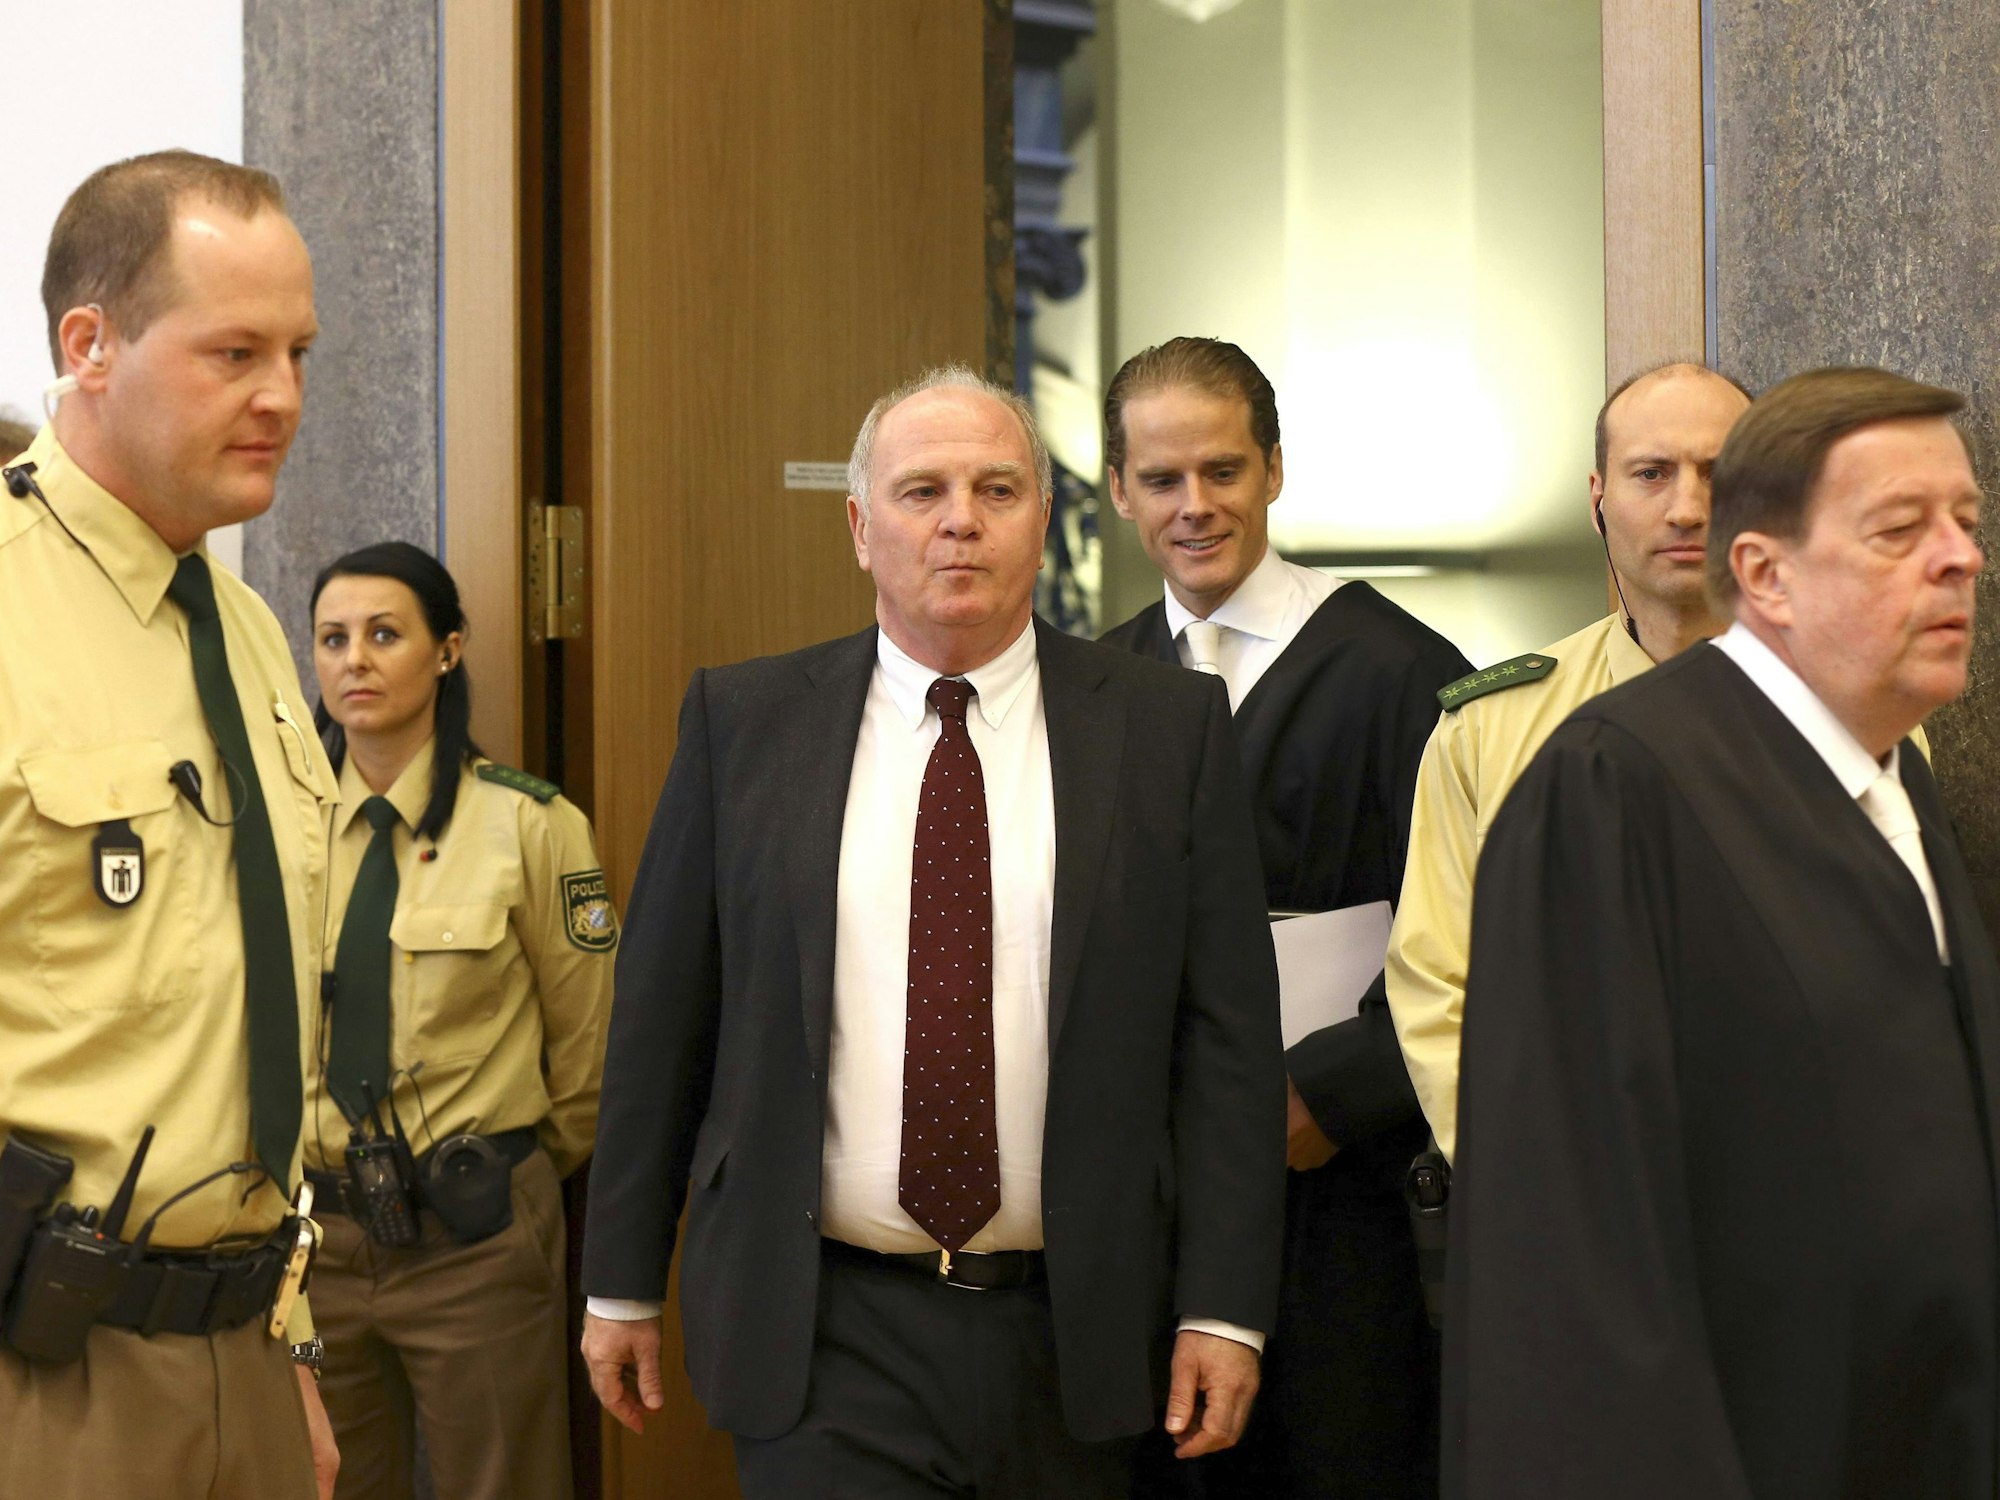 Uli Hoeneß beim letzten Prozesstag der Steuerhinterziehungsverhandlung gegen ihn vor der 5. Strafkammer des Landgerichts München.